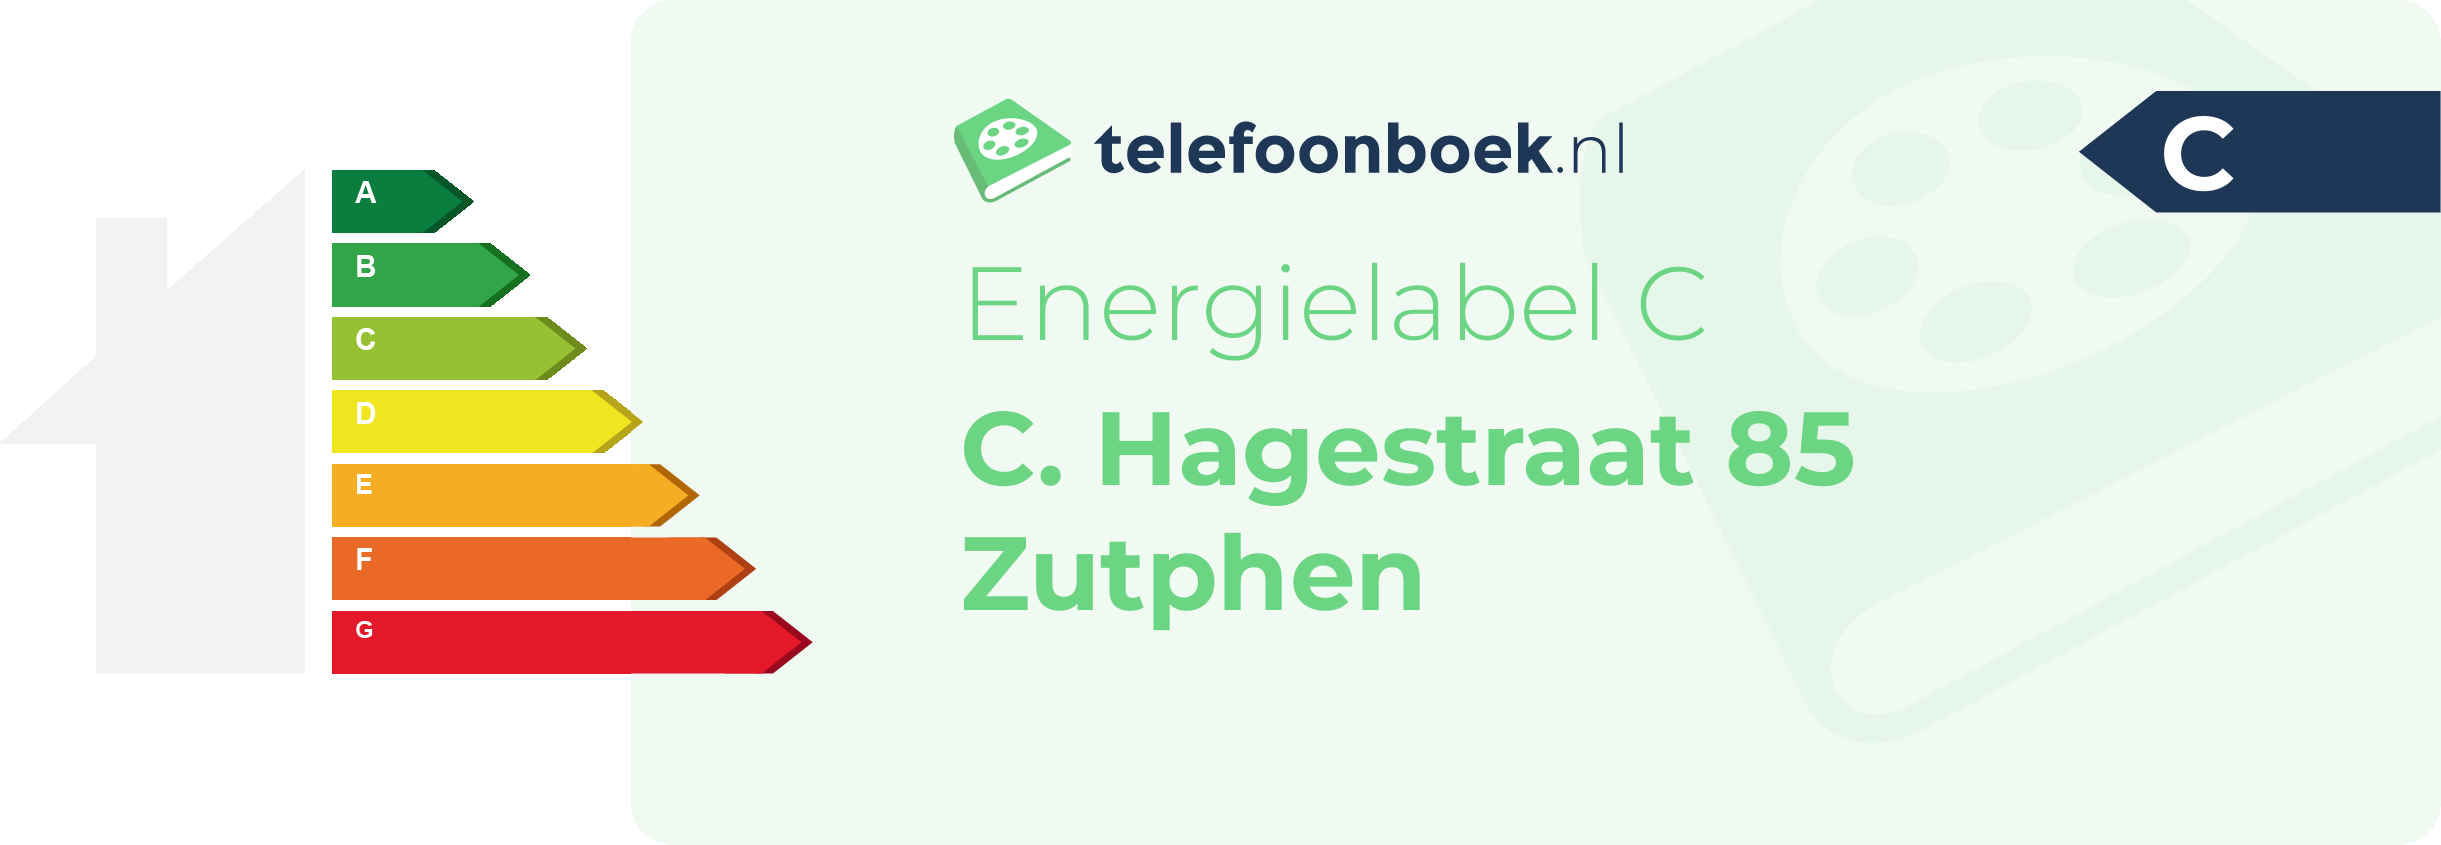 Energielabel C. Hagestraat 85 Zutphen